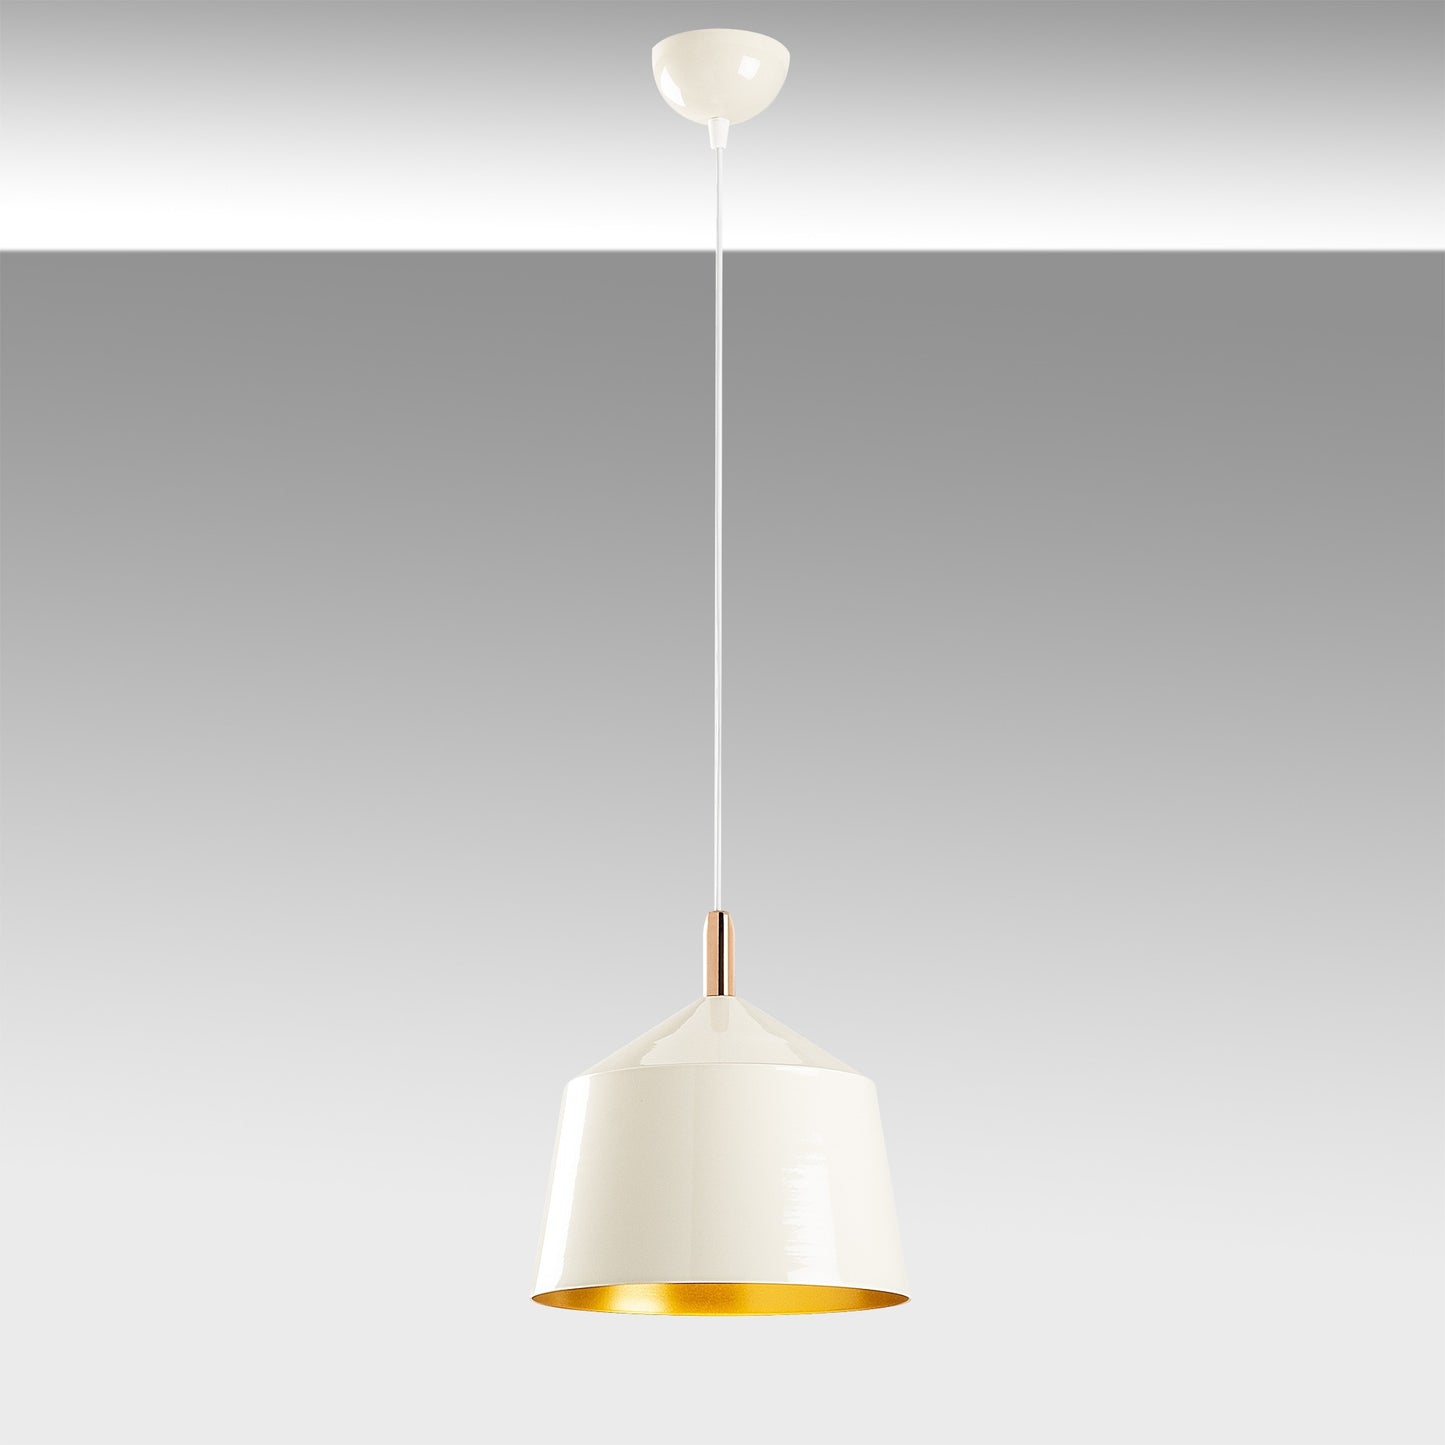 Loftlampe Saglam - 3725 - Hvid og guld/kobber